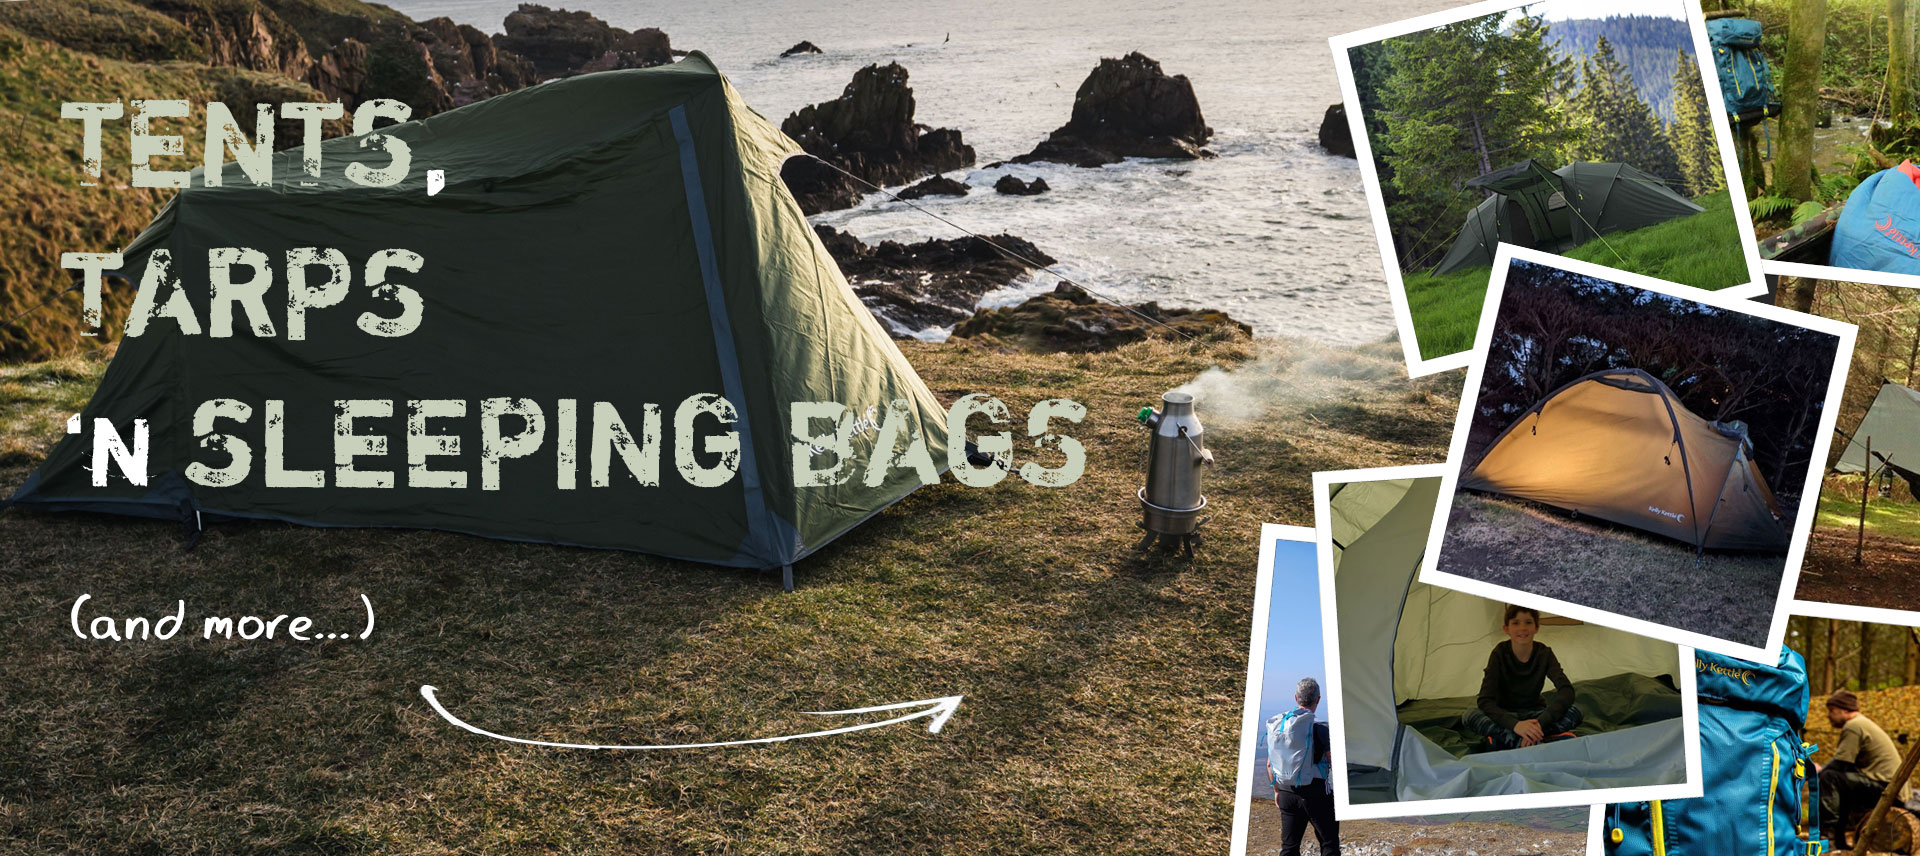 Waterproof Tents, Tarps, Backpacks, Sleeping Bags